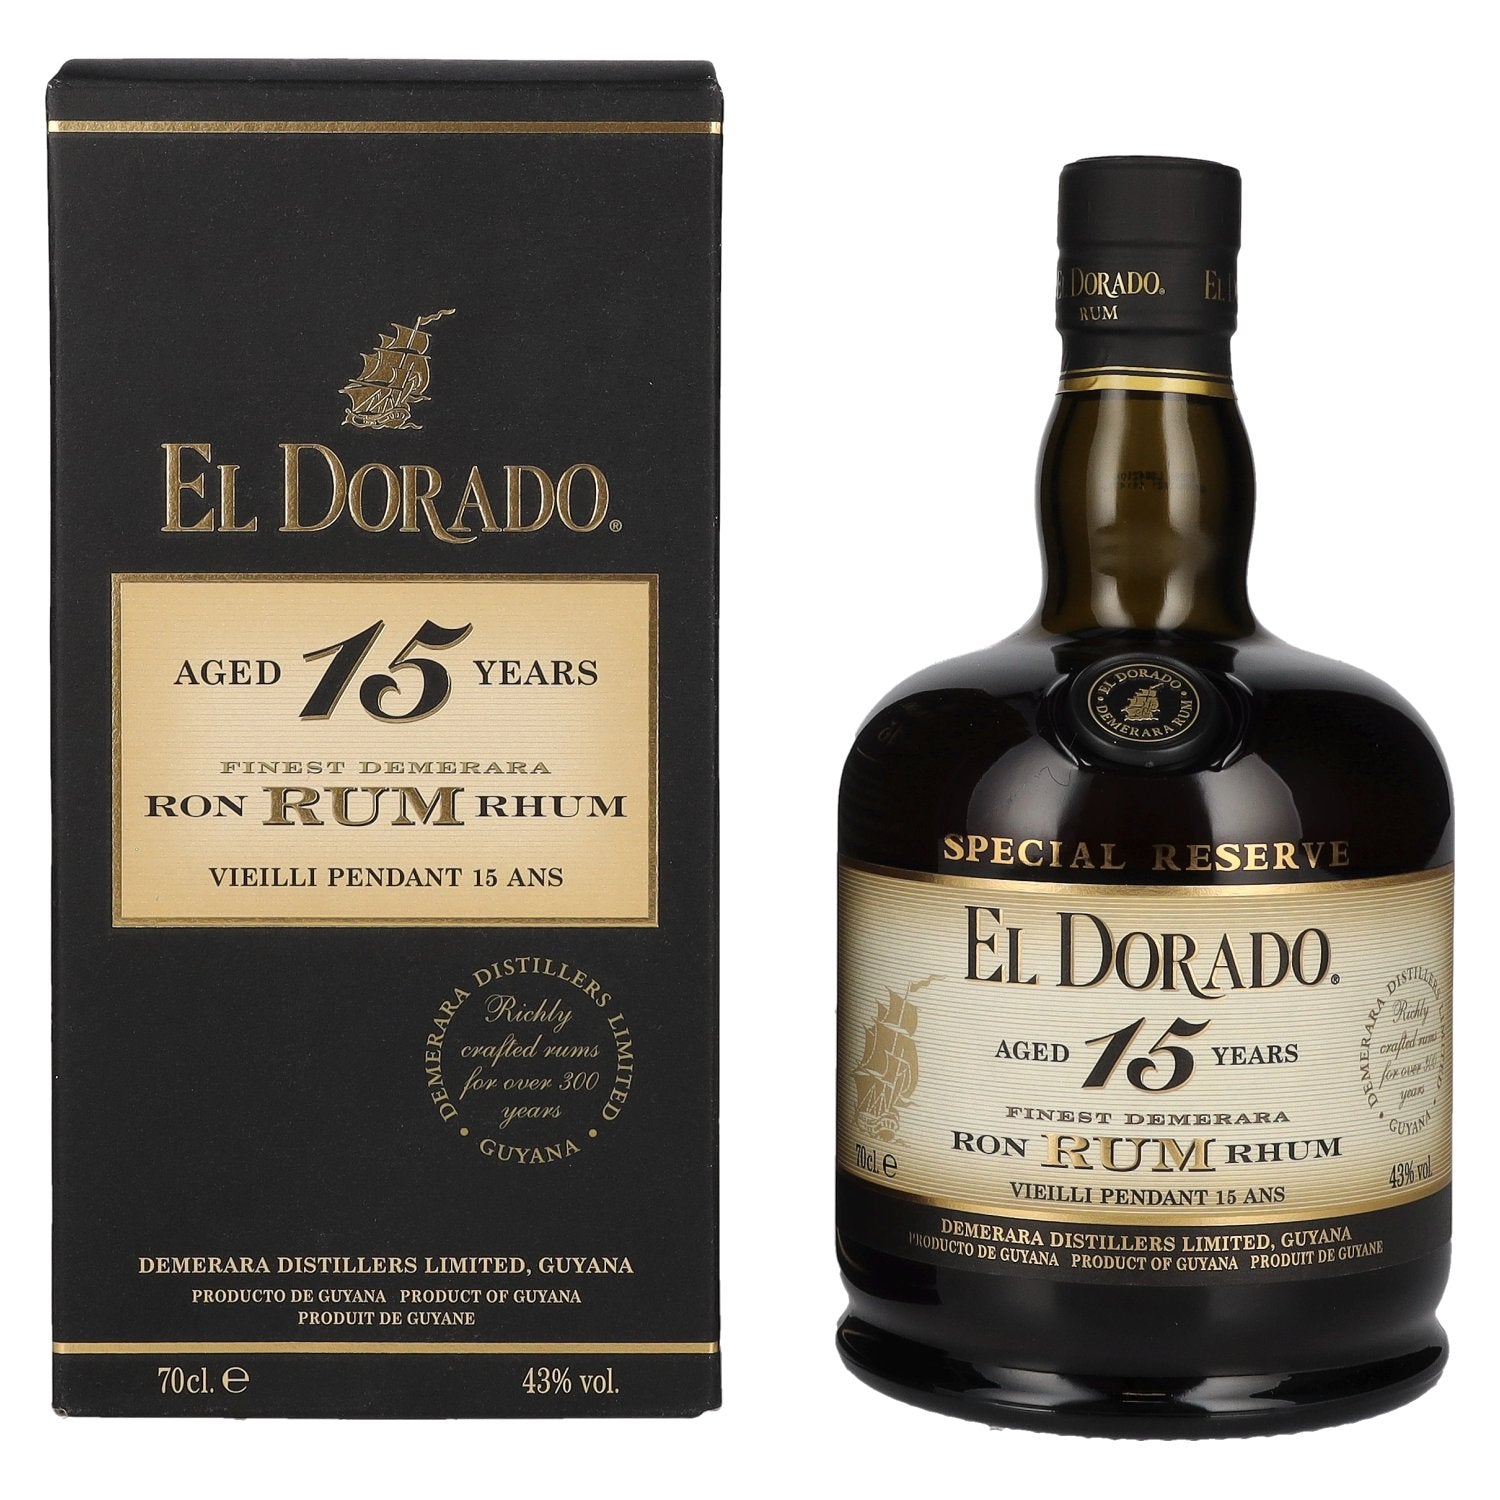 El Dorado 15 Years Old Finest Demerara Rum SPECIAL RESERVE 43% Vol. 0,7l in Giftbox